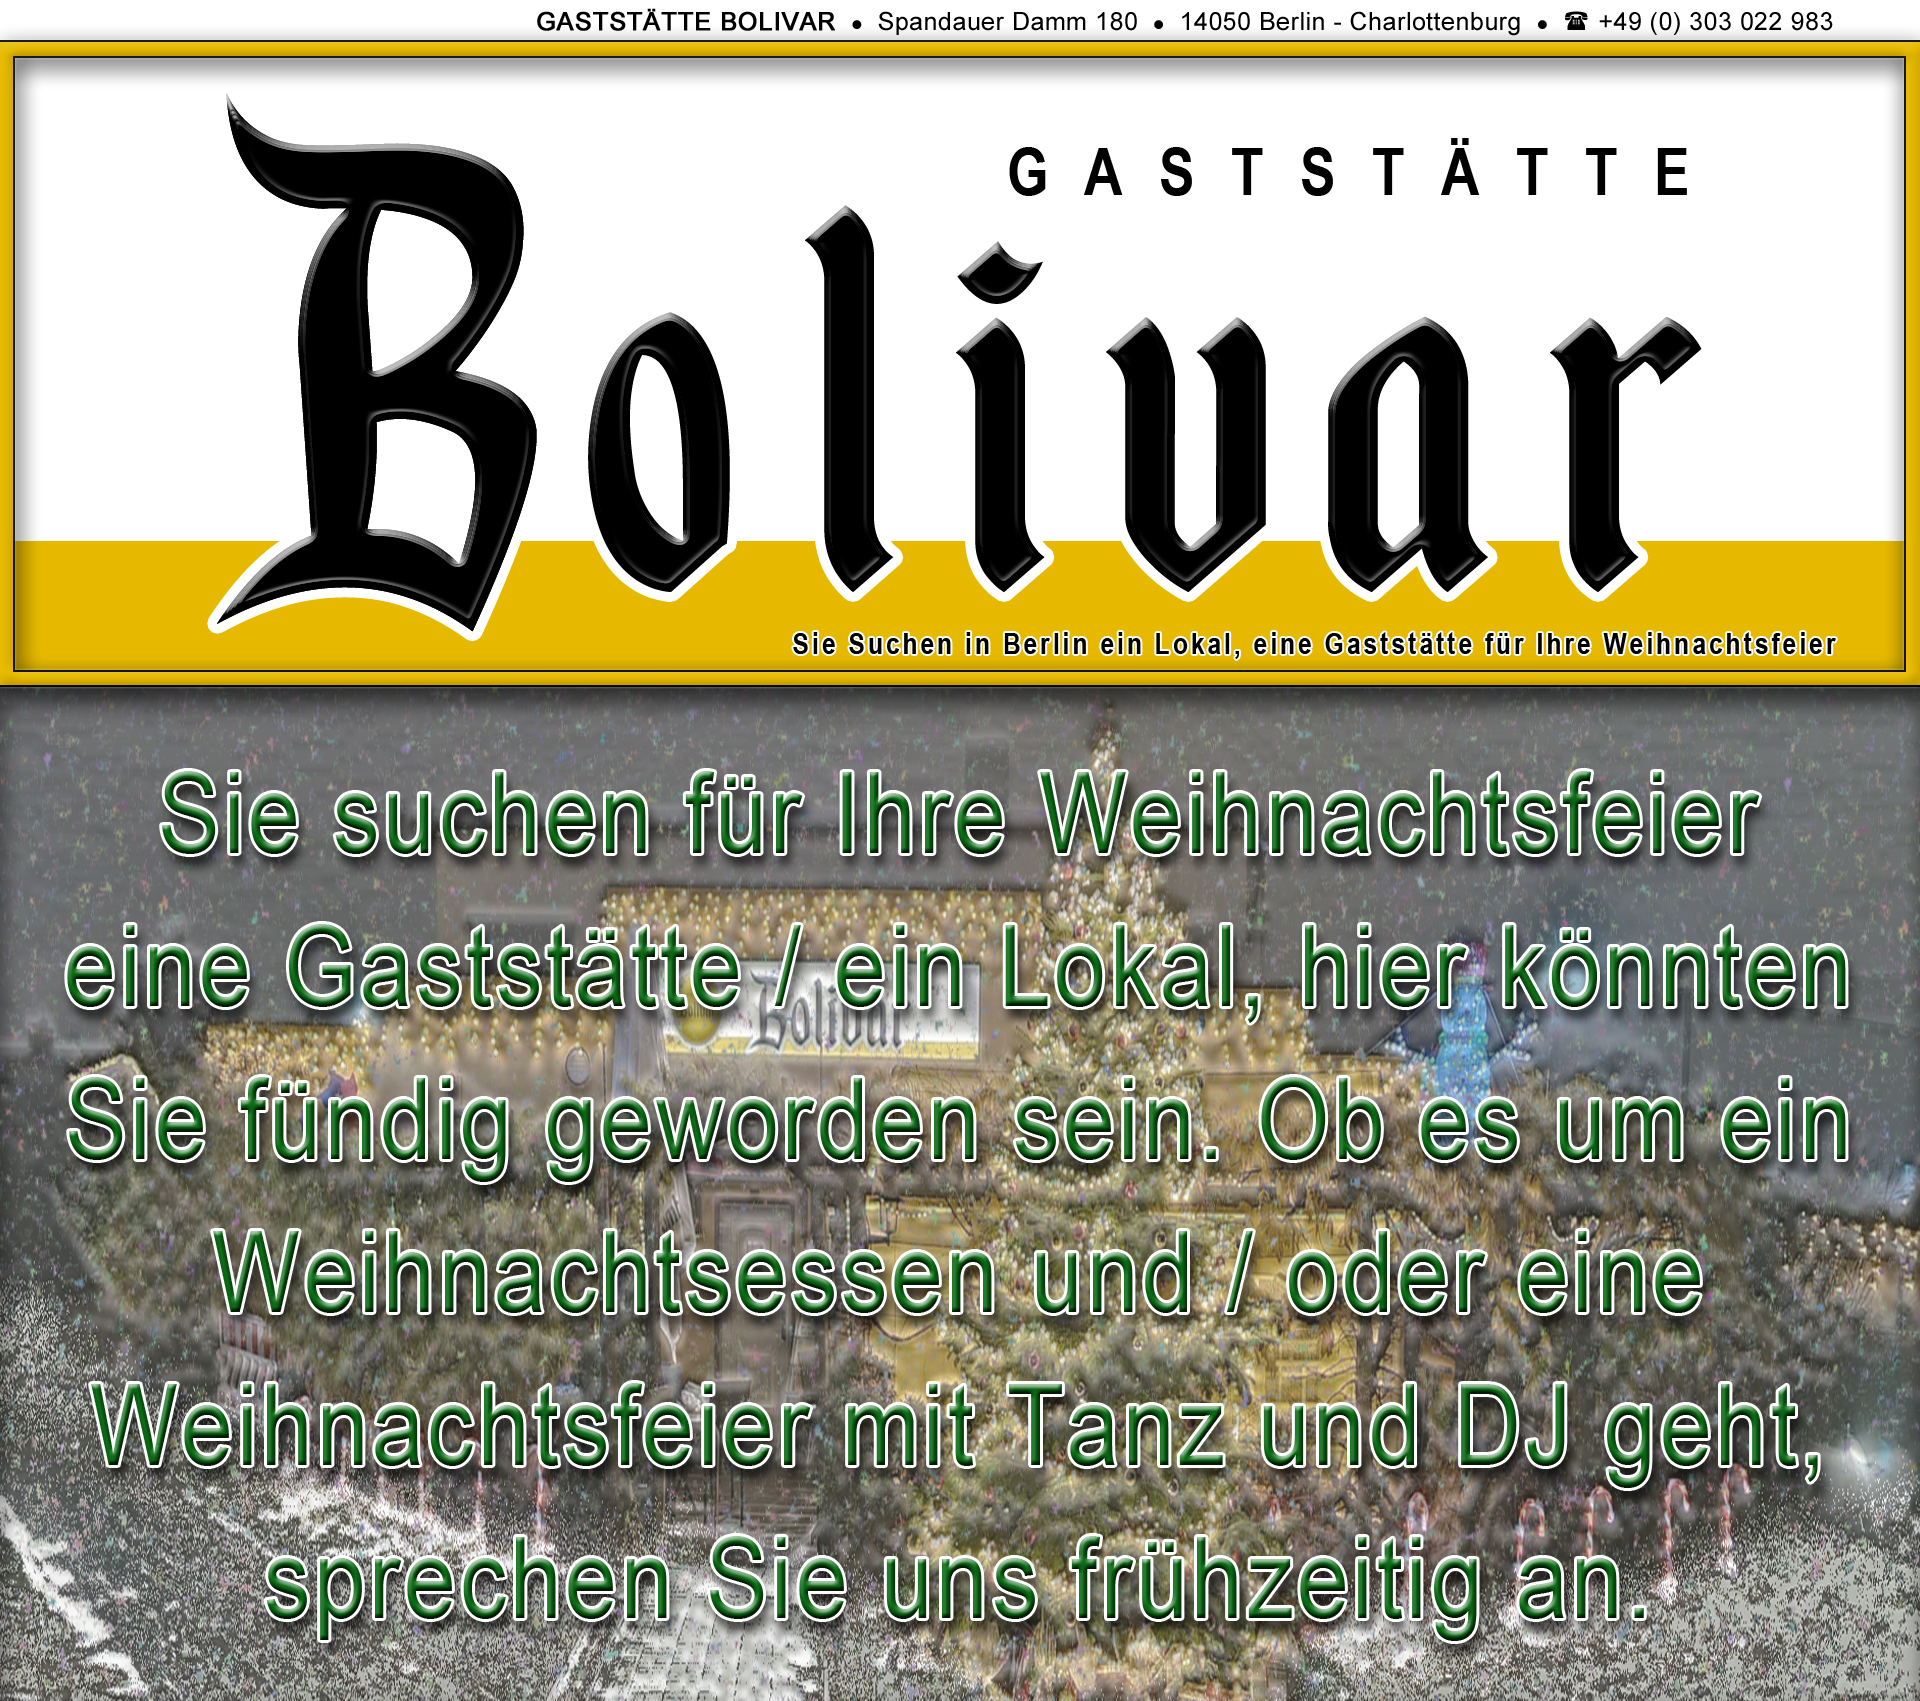 bolivar-berlin-charlottenburg-biergarten-imbiss-grill-gaststaette-loka-raeumlichkeitl-weihnachtsfeier-betriebsfeier